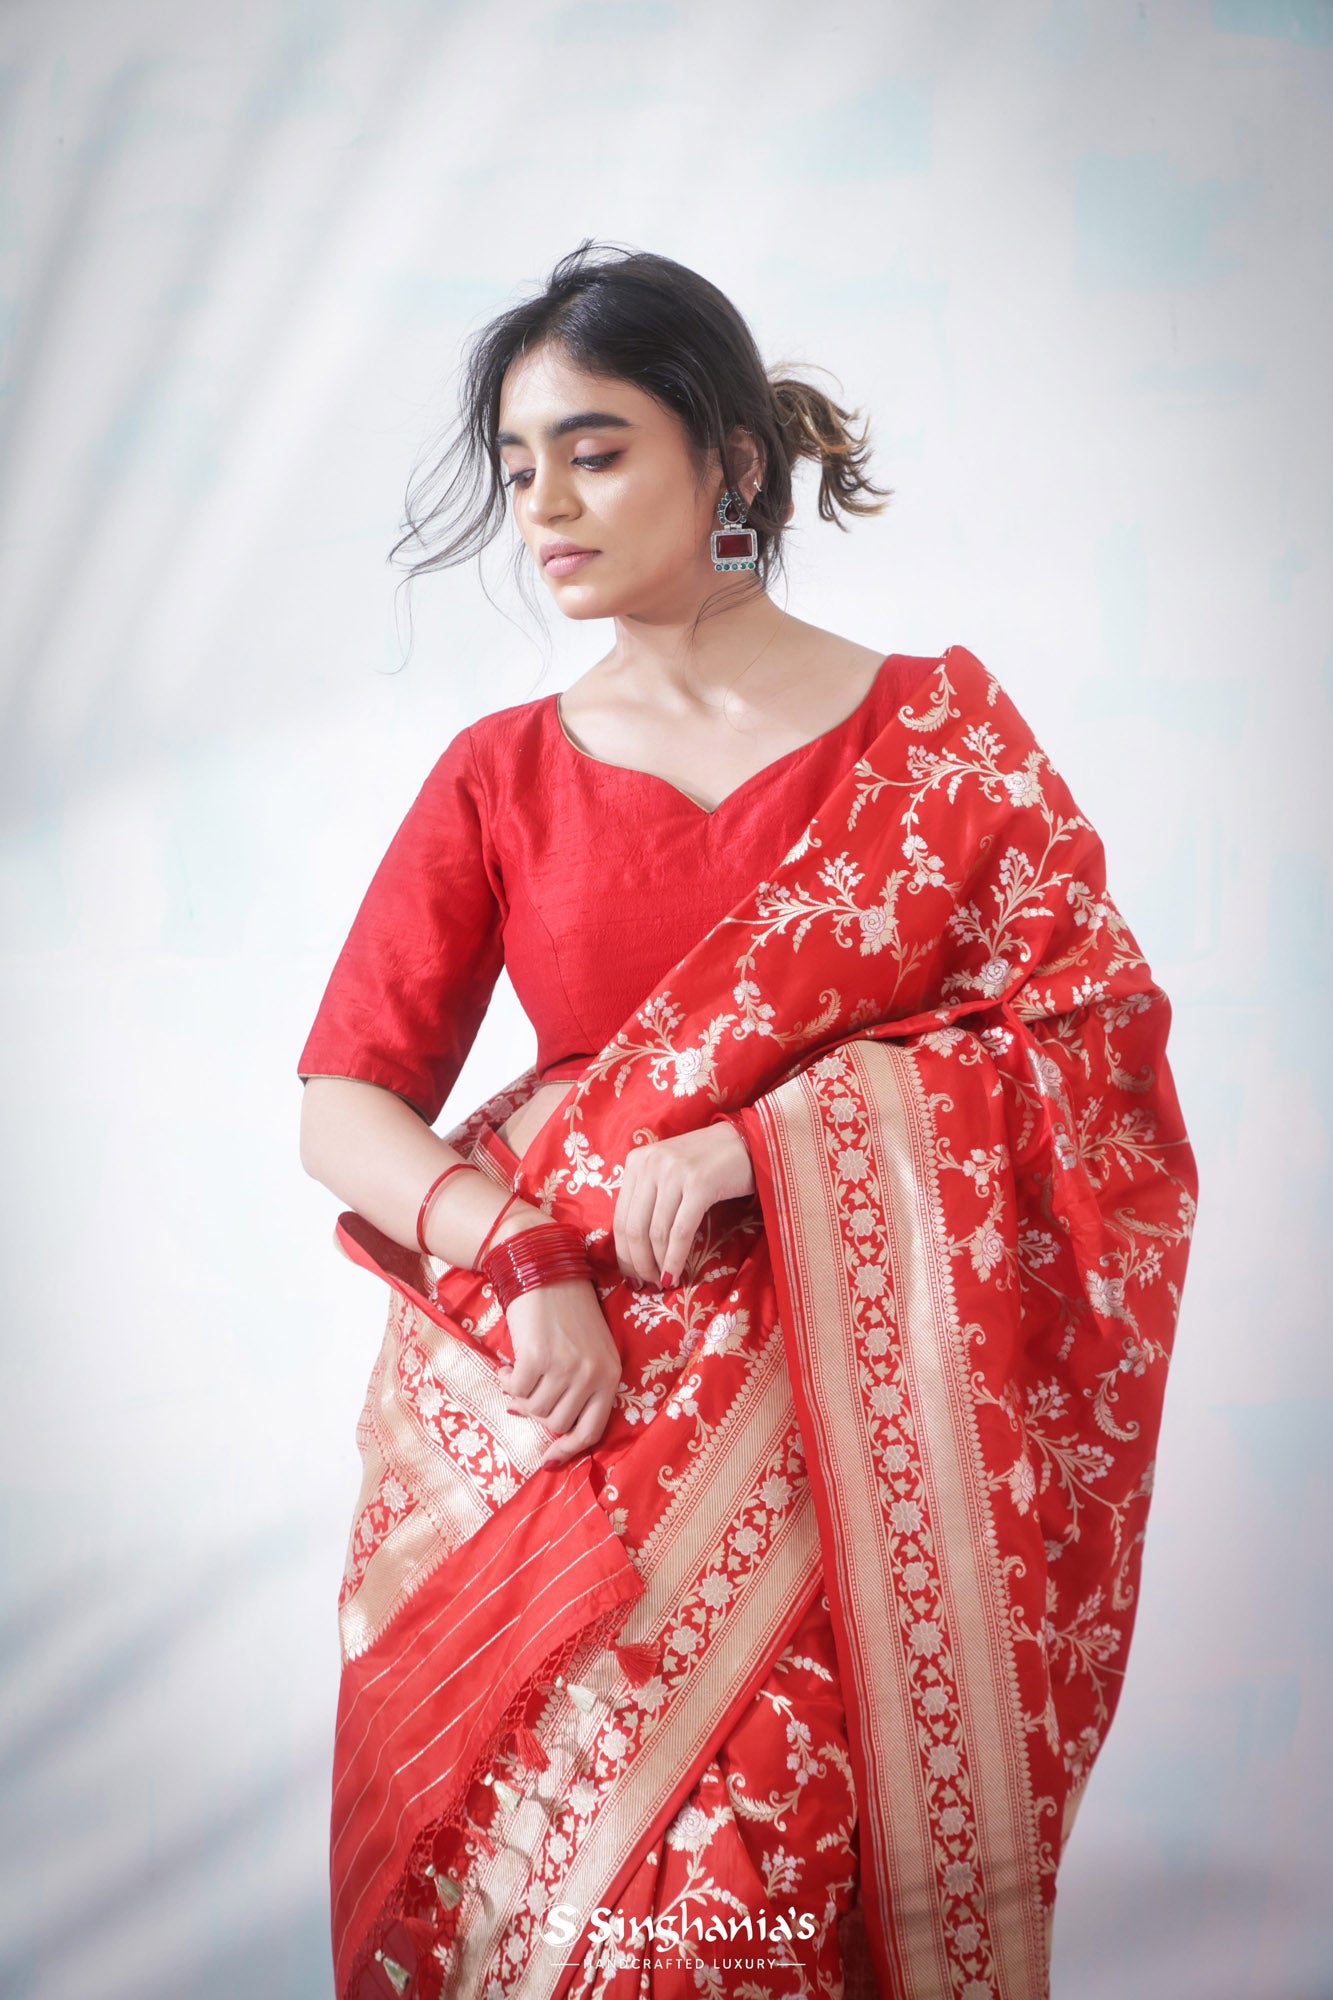 Phillies Red Banarasi Silk Saree With Floral Design